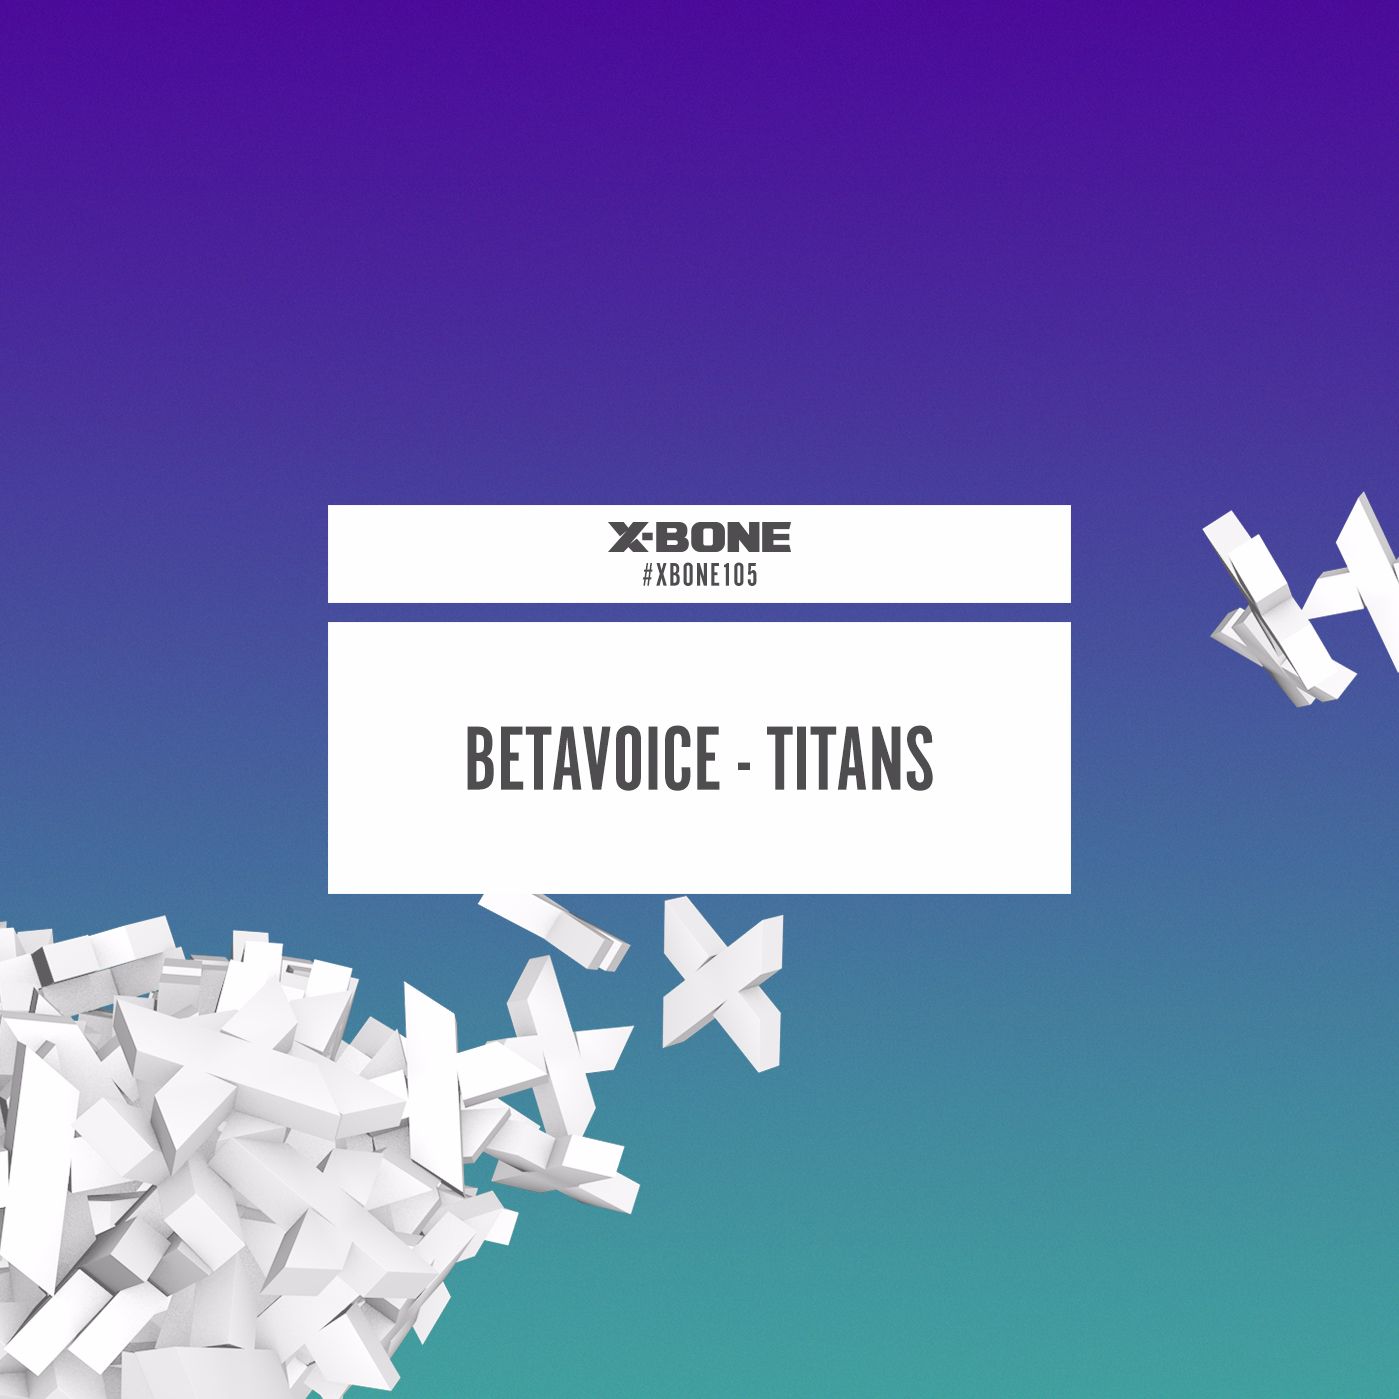 Betavoice - Titans